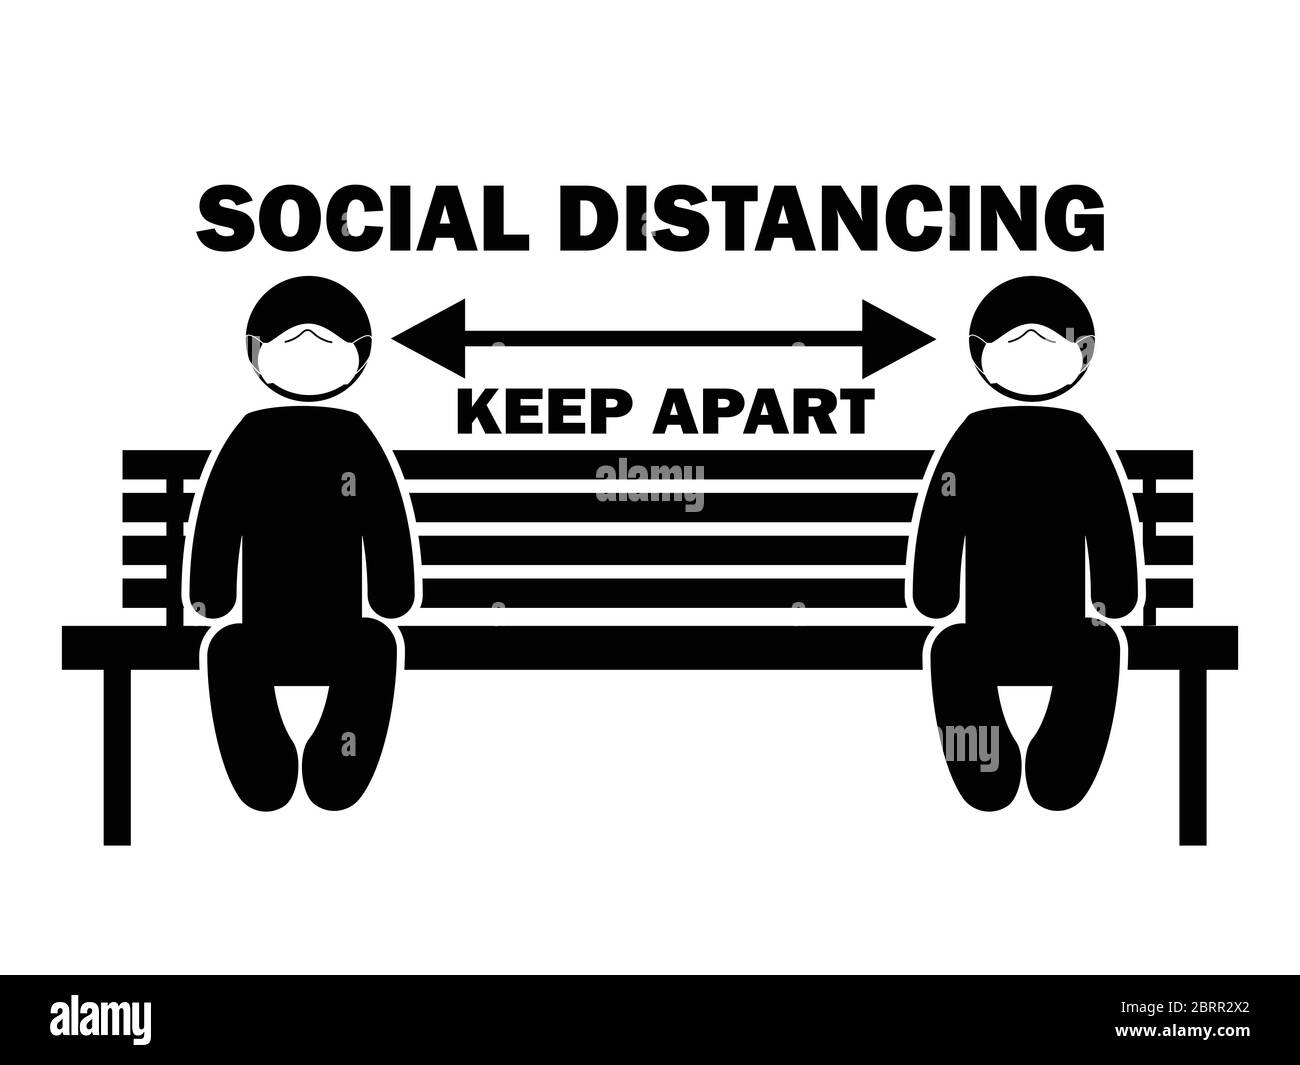 Social Distancing Keep Apart Stick Figure con maschera sul banco. Freccia di illustrazione che illustra le linee guida e le regole di allontanamento sociale durante il covid-19. EPS Illustrazione Vettoriale